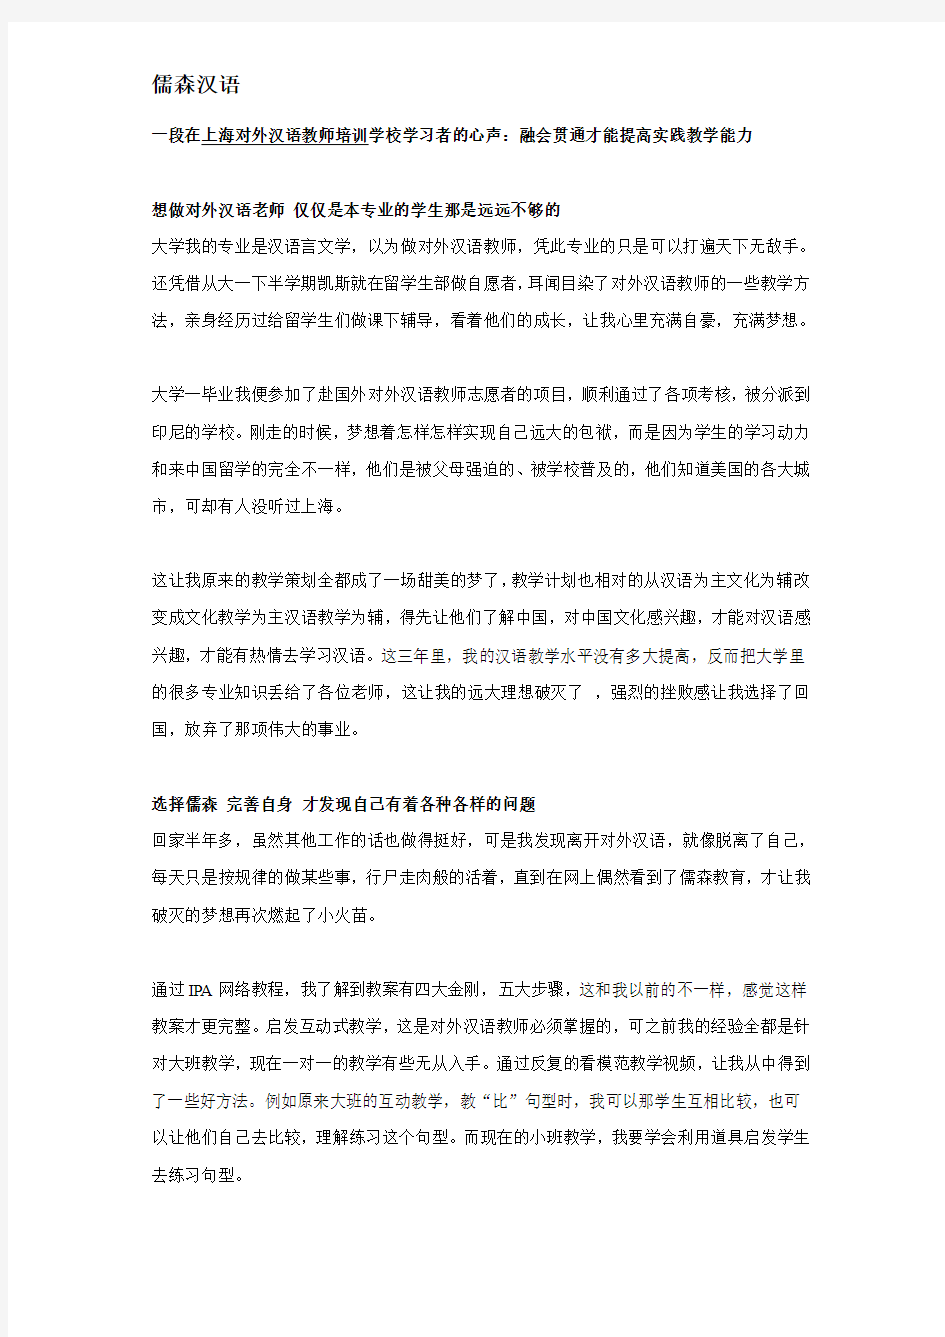 一段在上海对外汉语教师培训学校学习者的心声：融会贯通才能提高实践教学能力